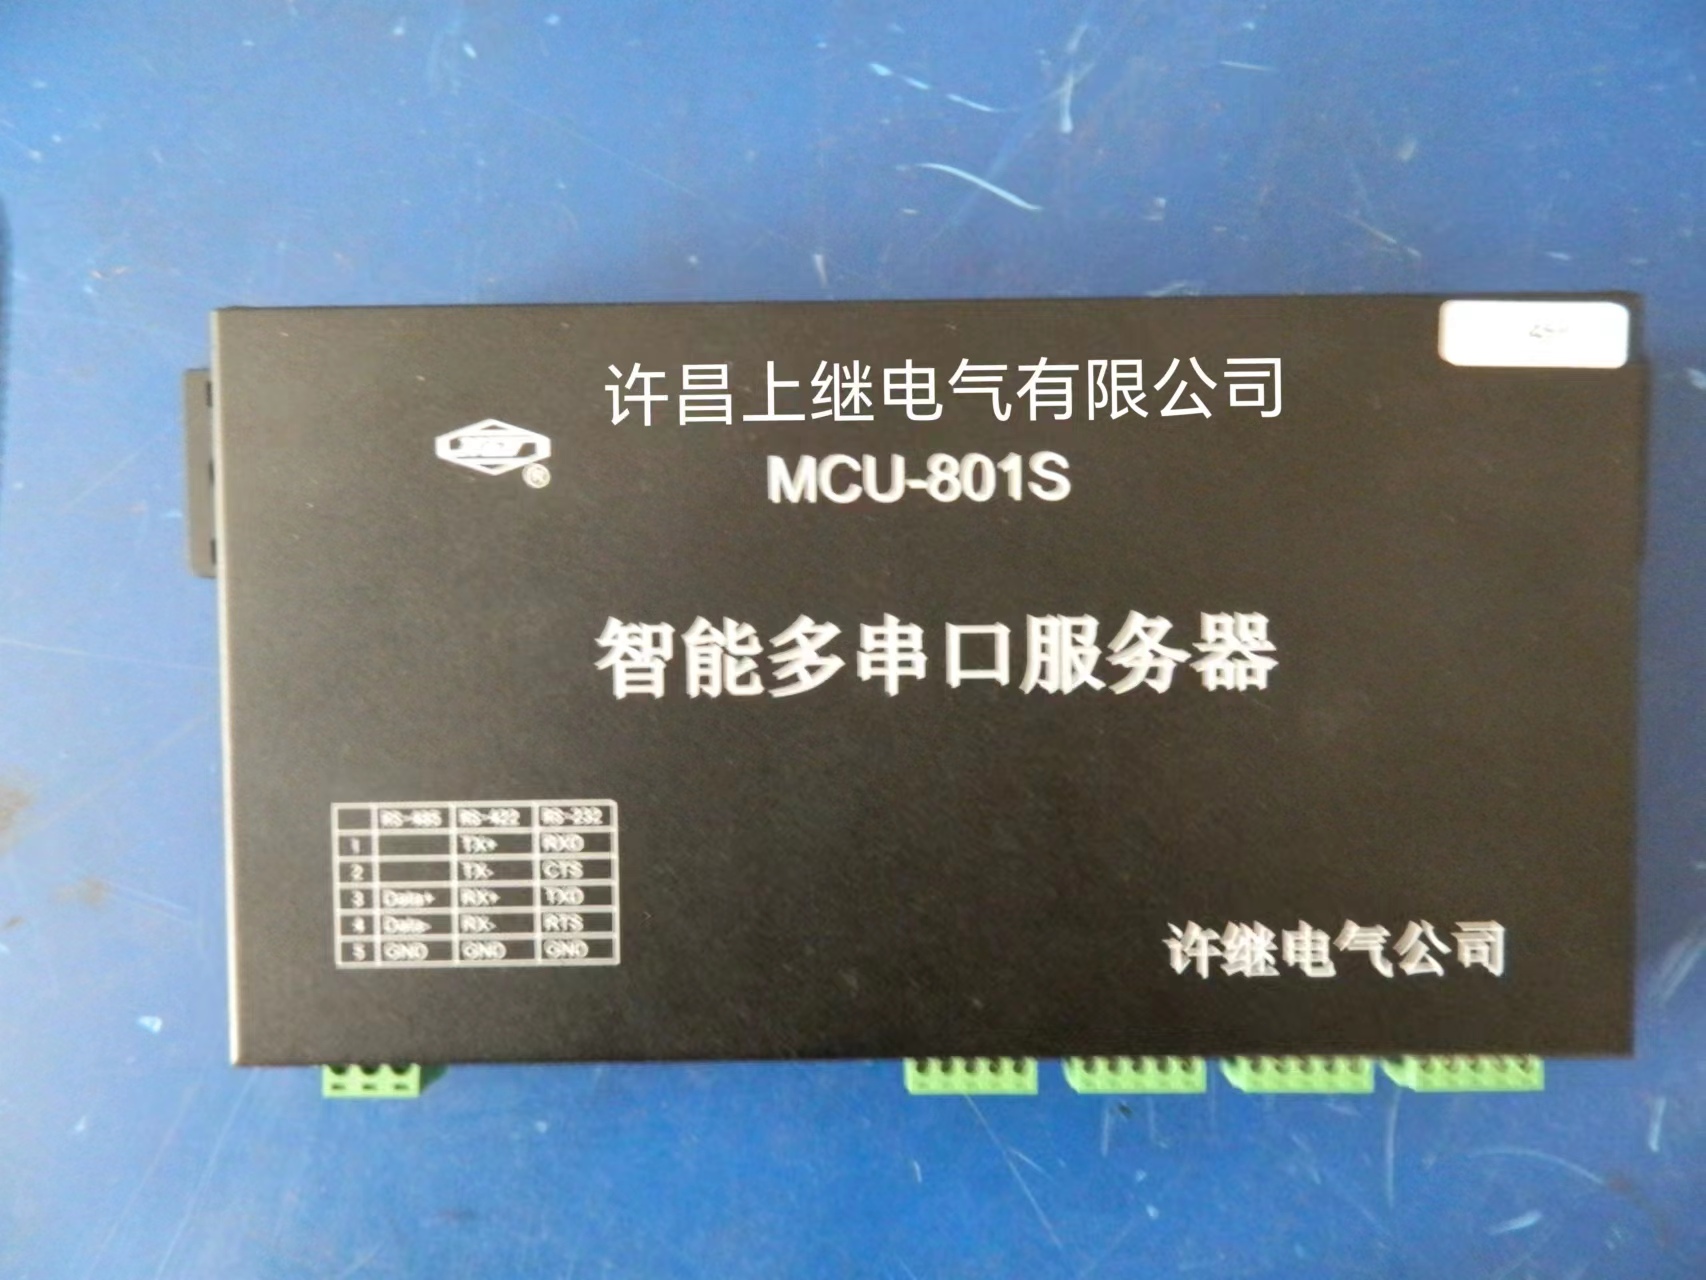 多串口服務器MCU-801S